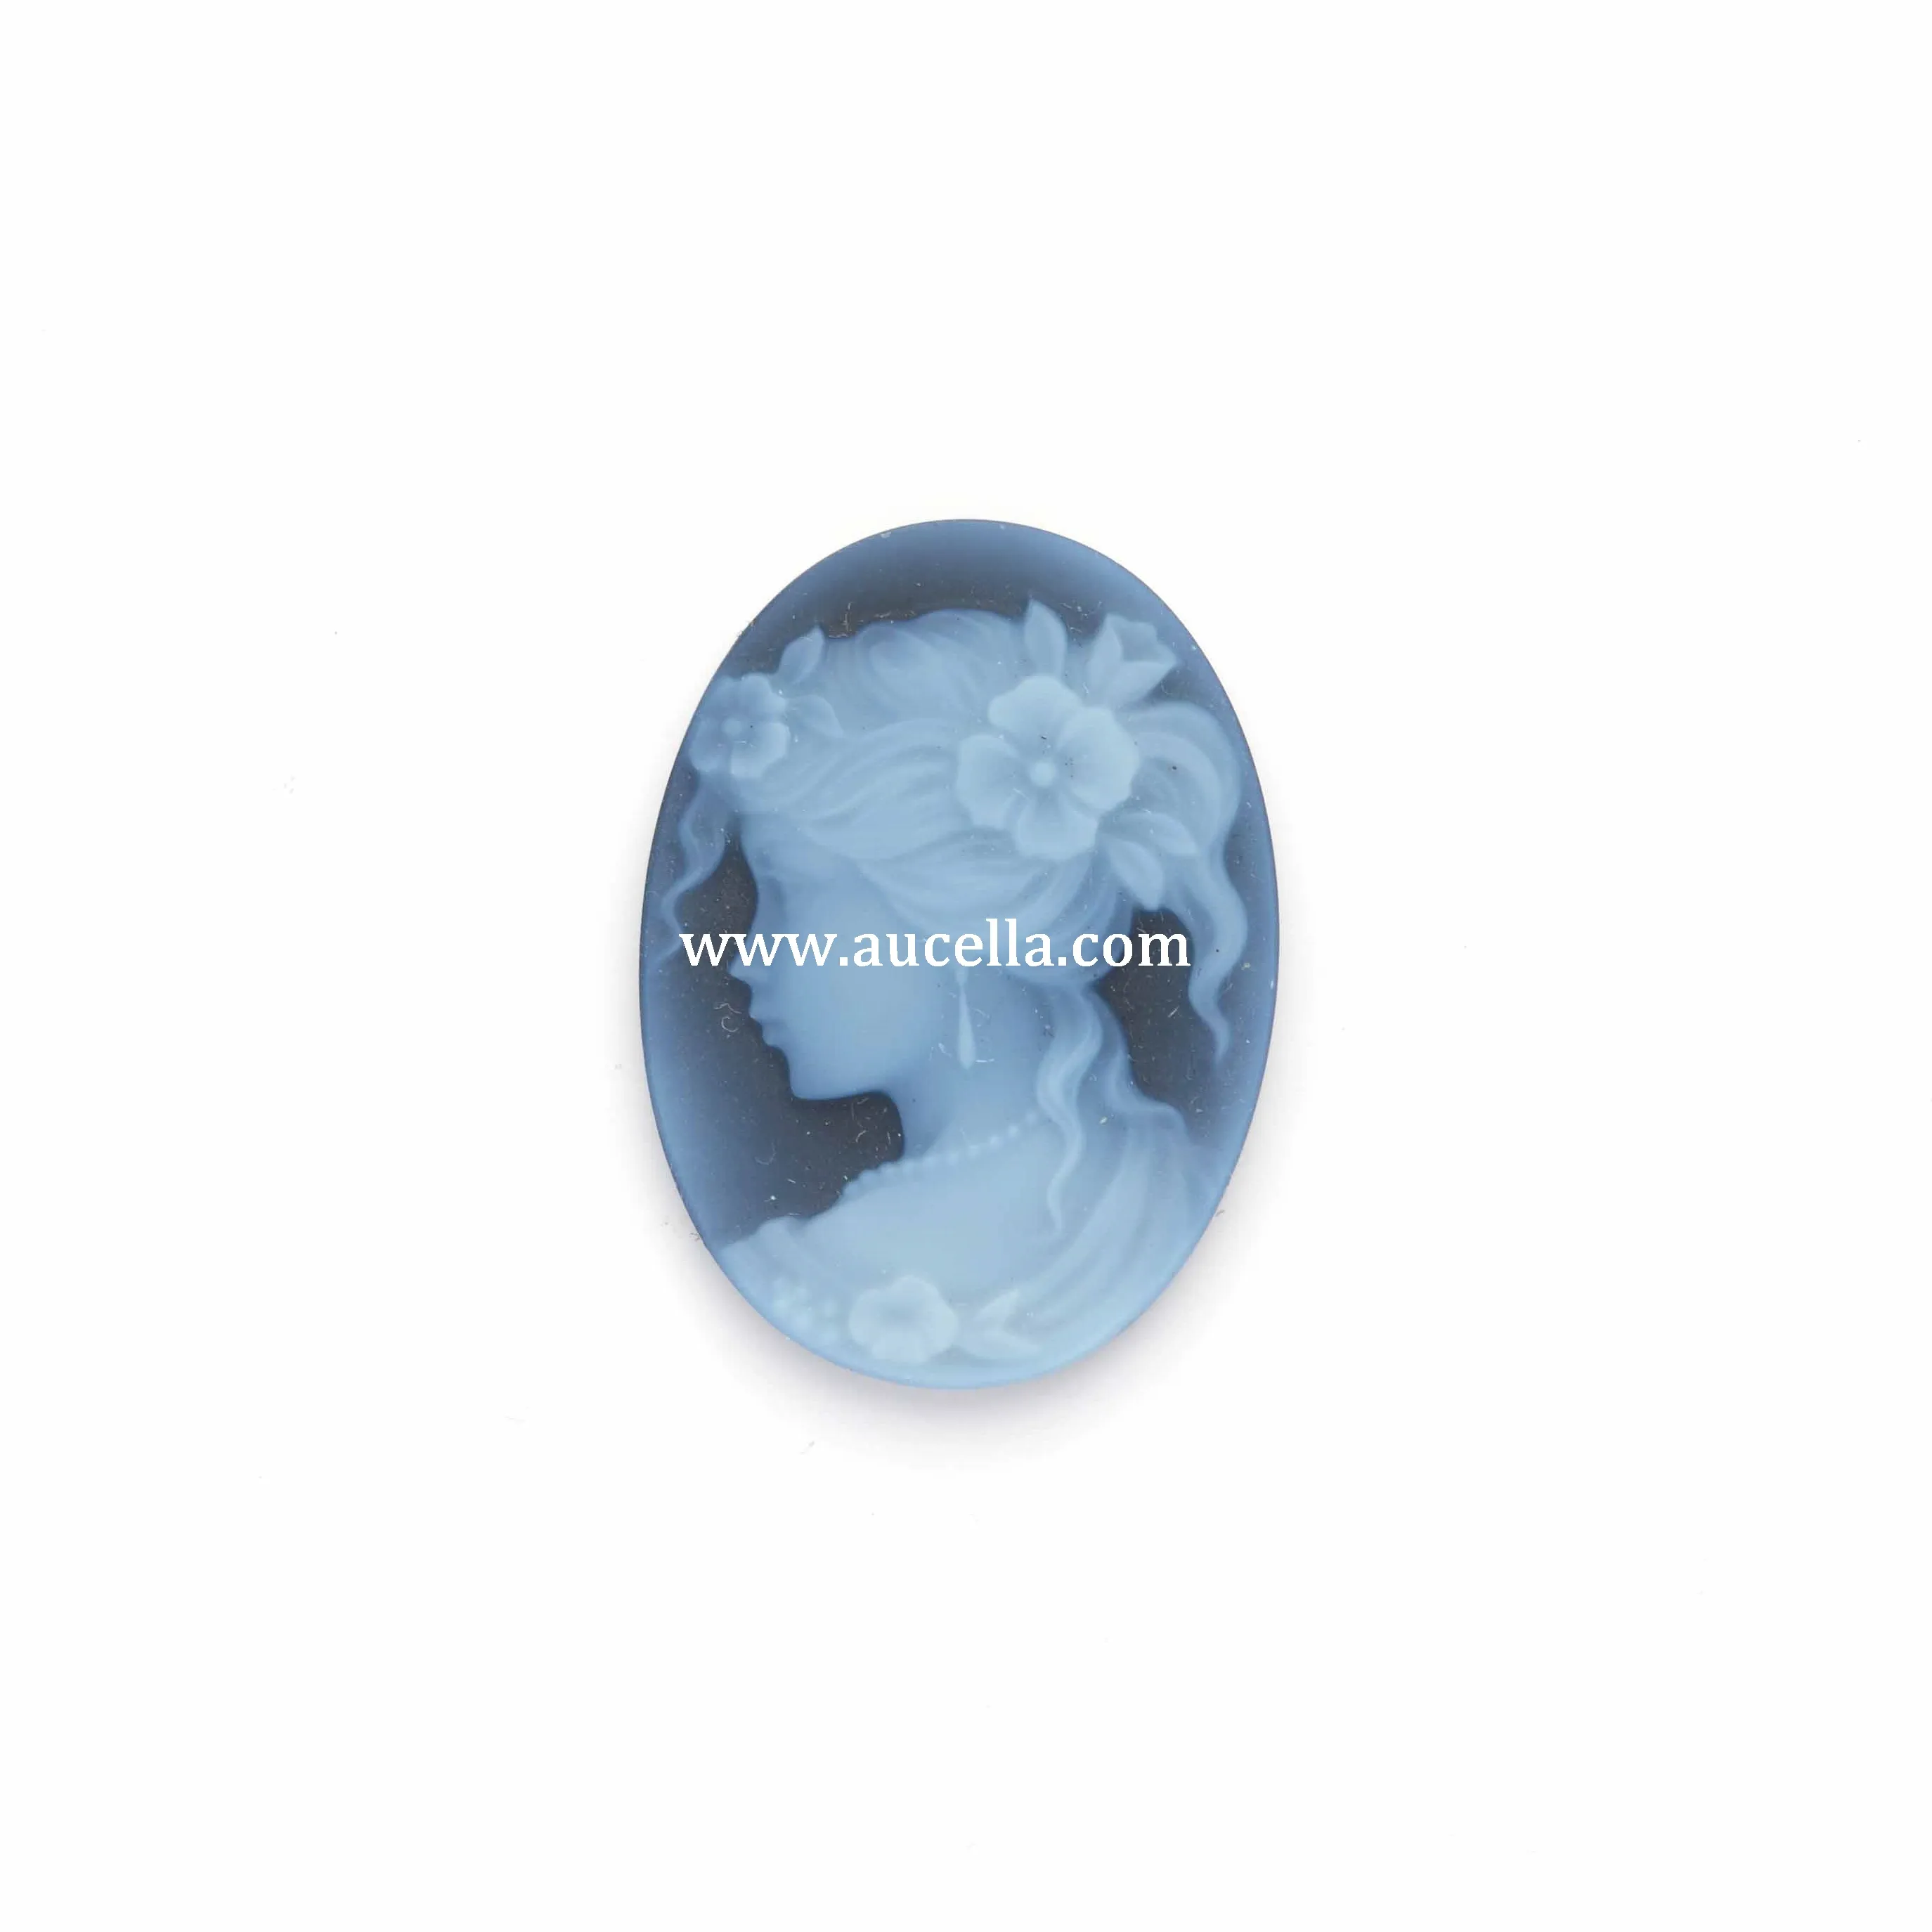 20 мм камни натуральный Agare синий цвет высшего качества продукт